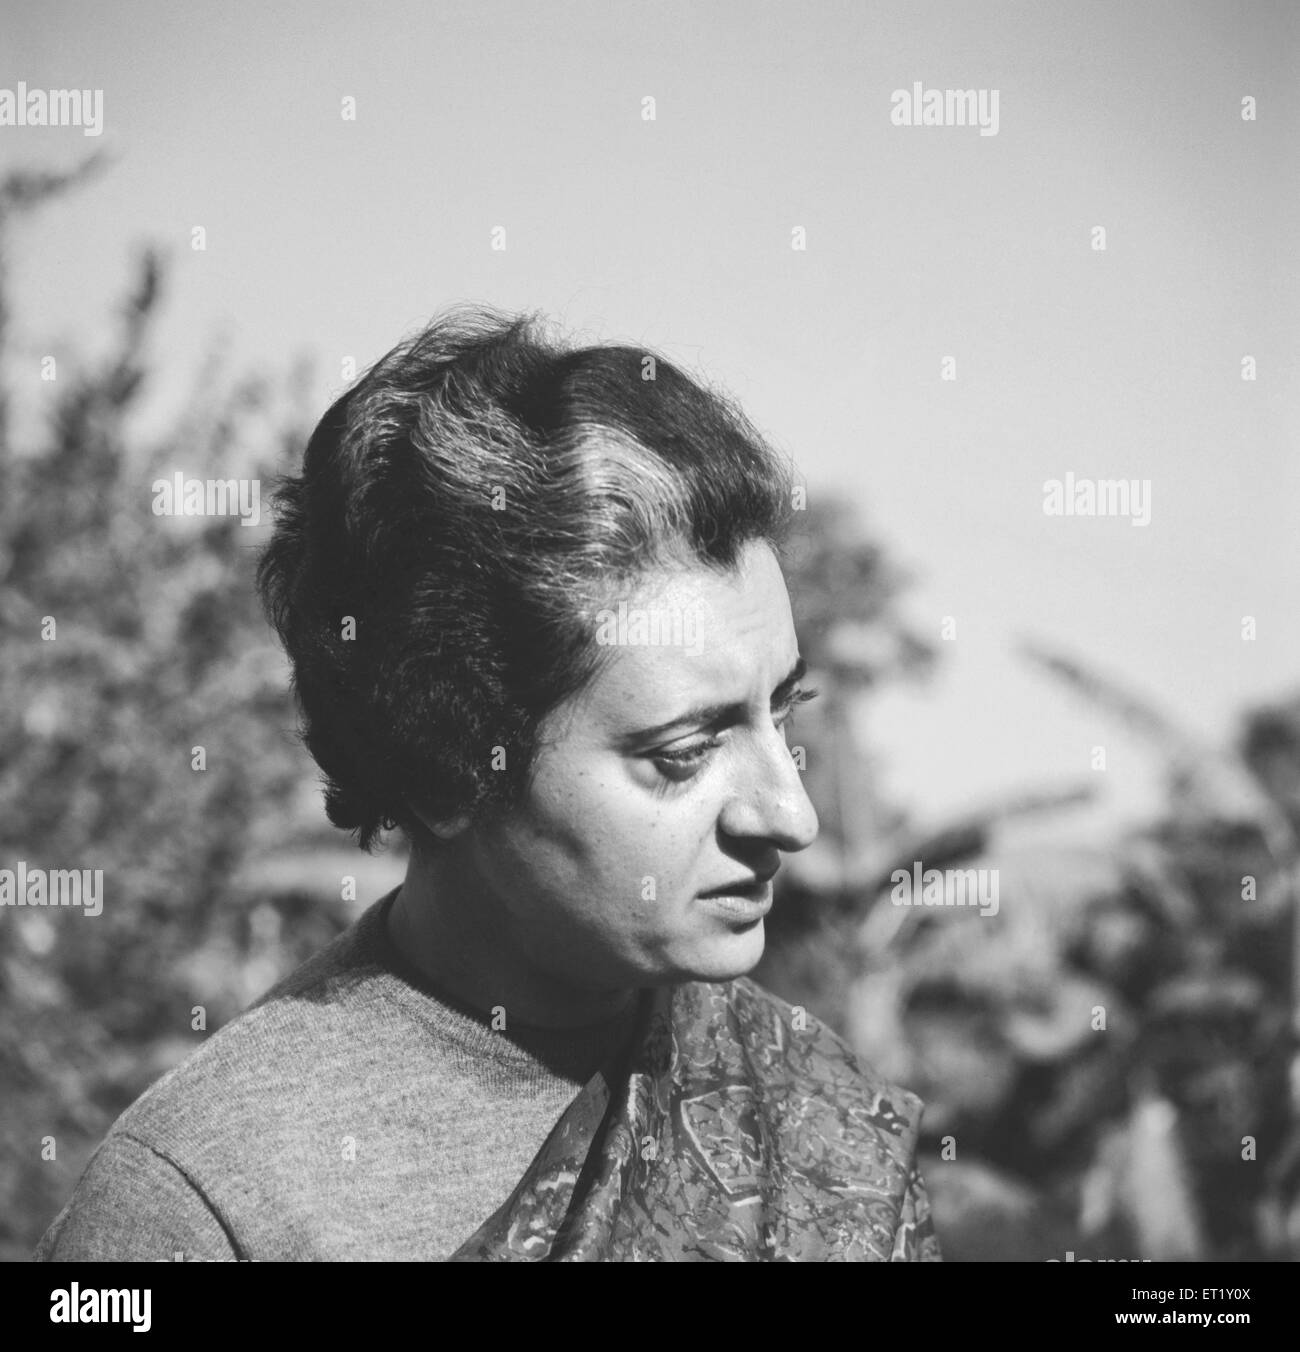 Indira Gandhi, Indira Priyadarshini Gandhi, politico indiano, ex primo ministro dell'India, 1960, Nuova Delhi, India, Asia, vecchia annata del 1900 Foto Stock